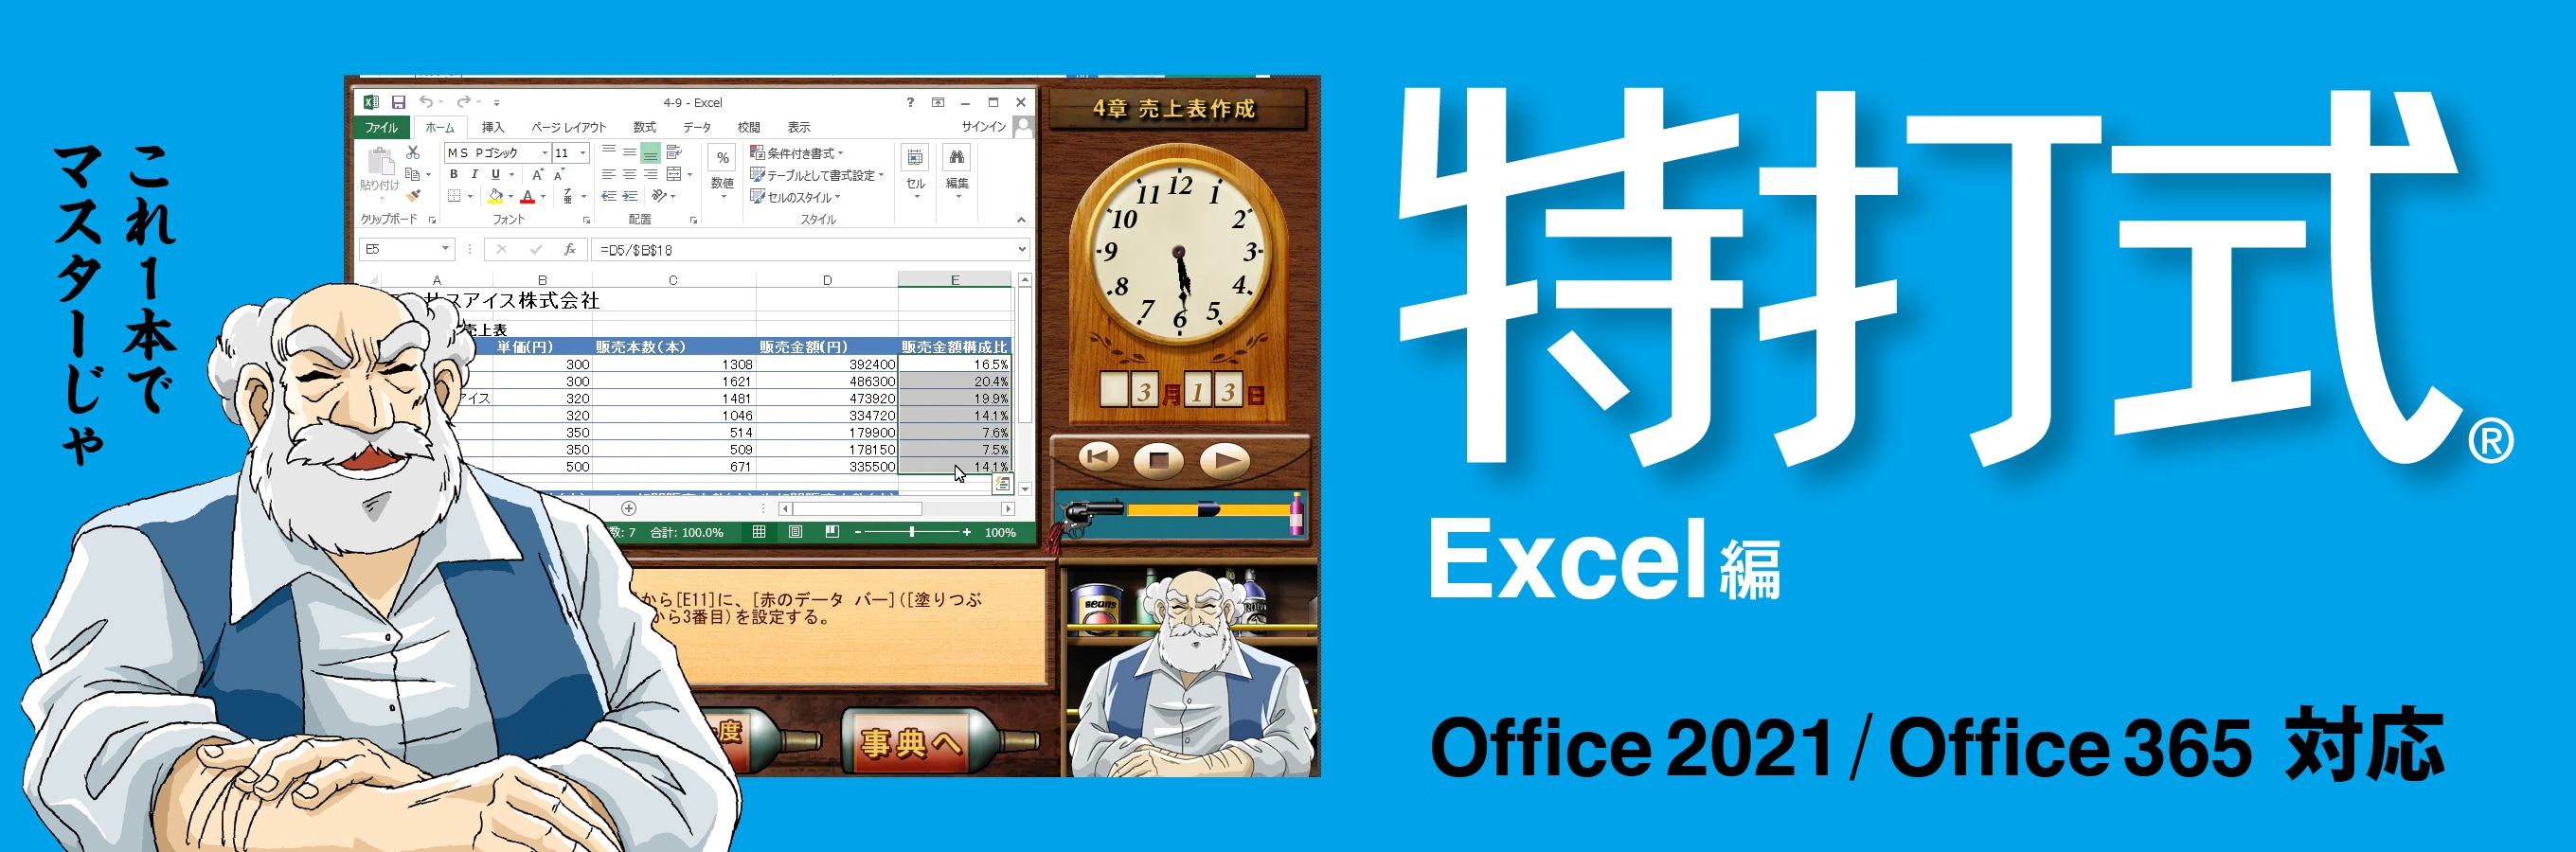 特打式 Excel編 - Office習得ソフト